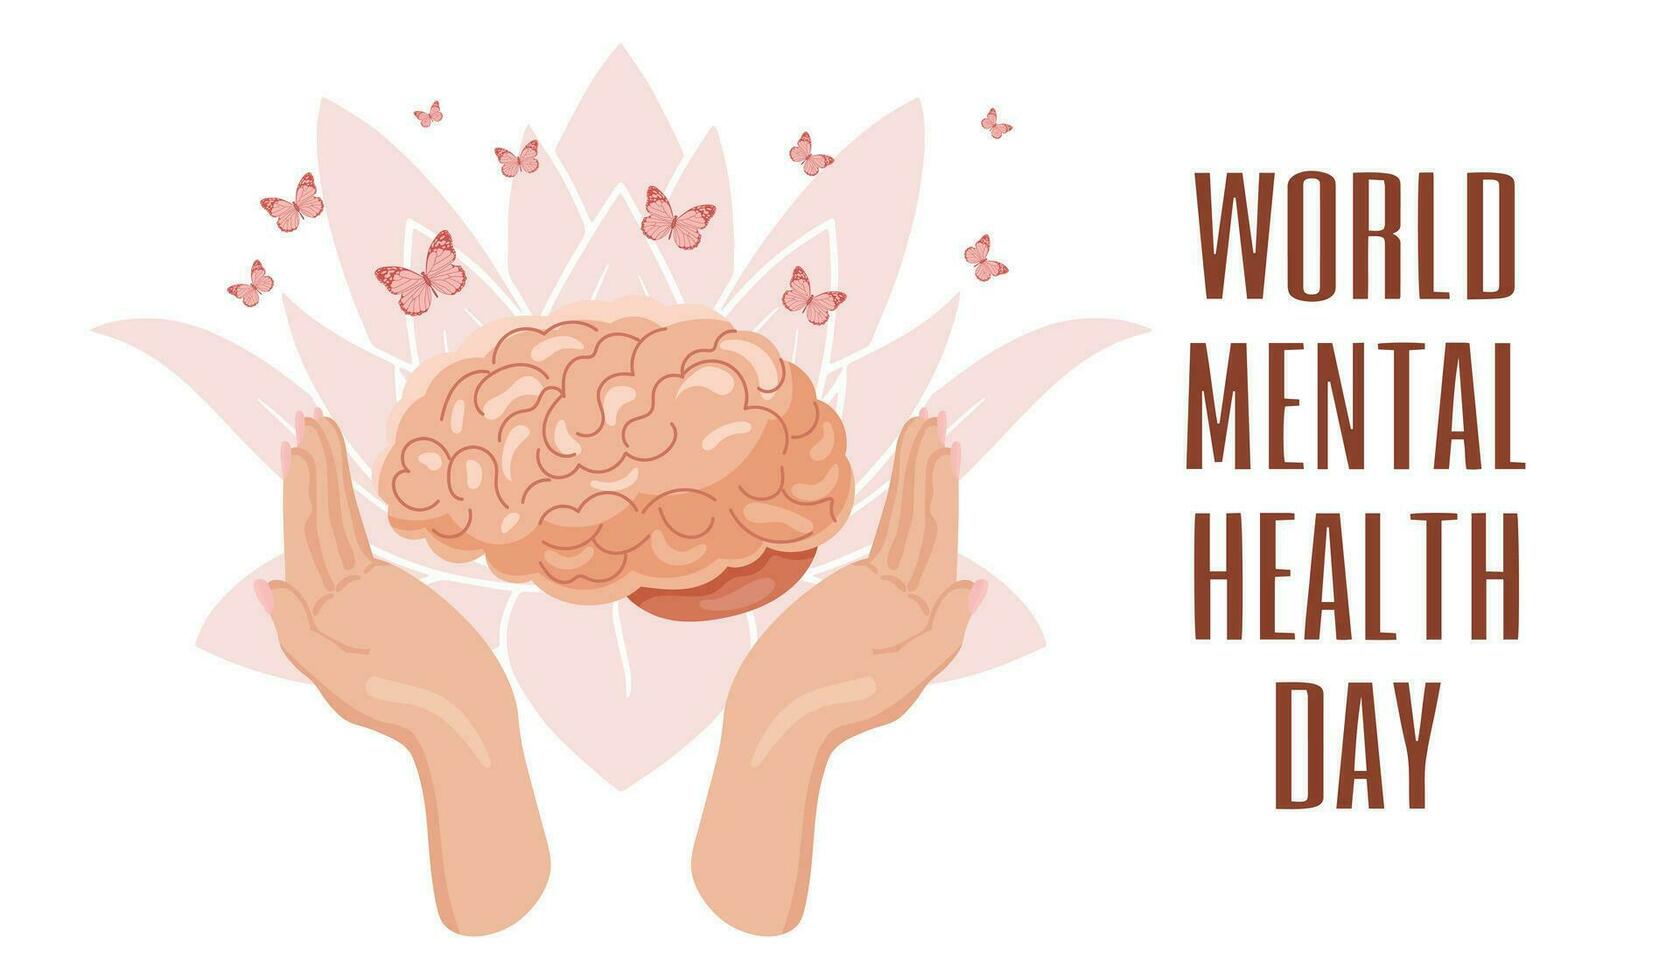 Welt mental Gesundheit Tag, Oktober 10. geistig gesund Mensch Gehirn im Hände und Blumen. Poster, Banner, Flyer, Vektor